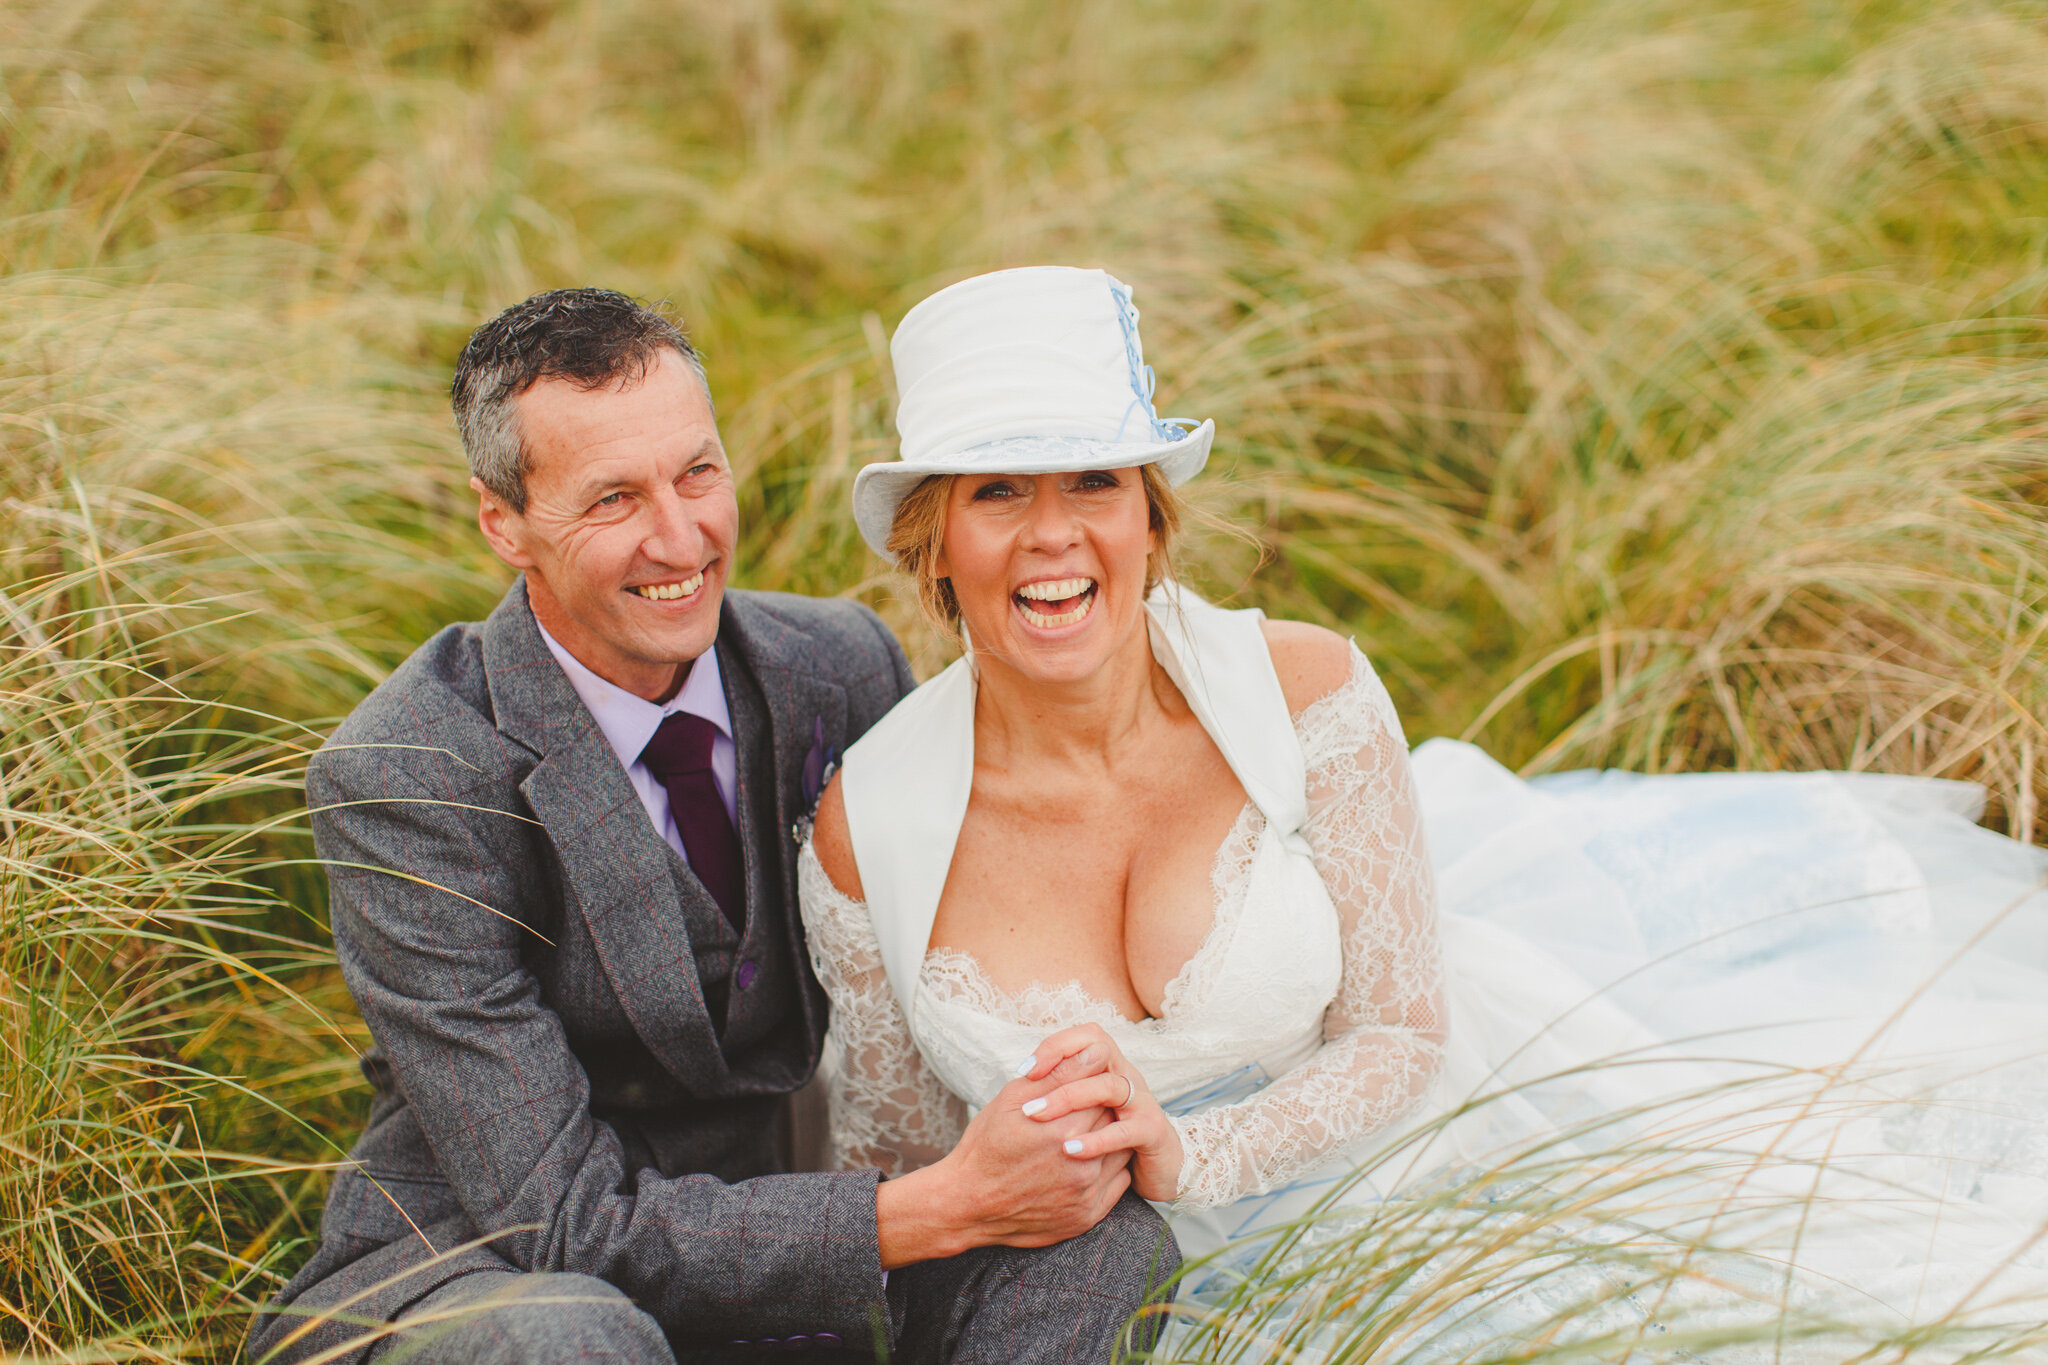 derbyshire-wedding-elopement-photographer-best-2020-141.jpg